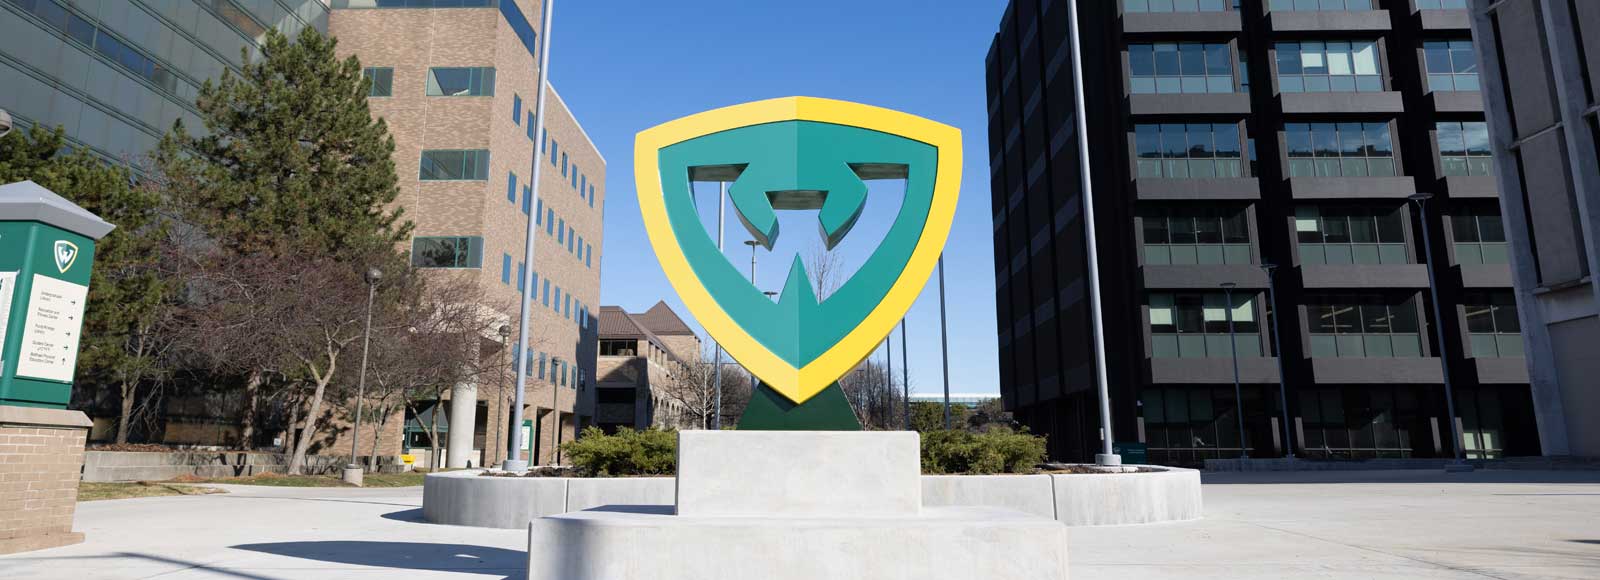 Sculpture of WSU shield